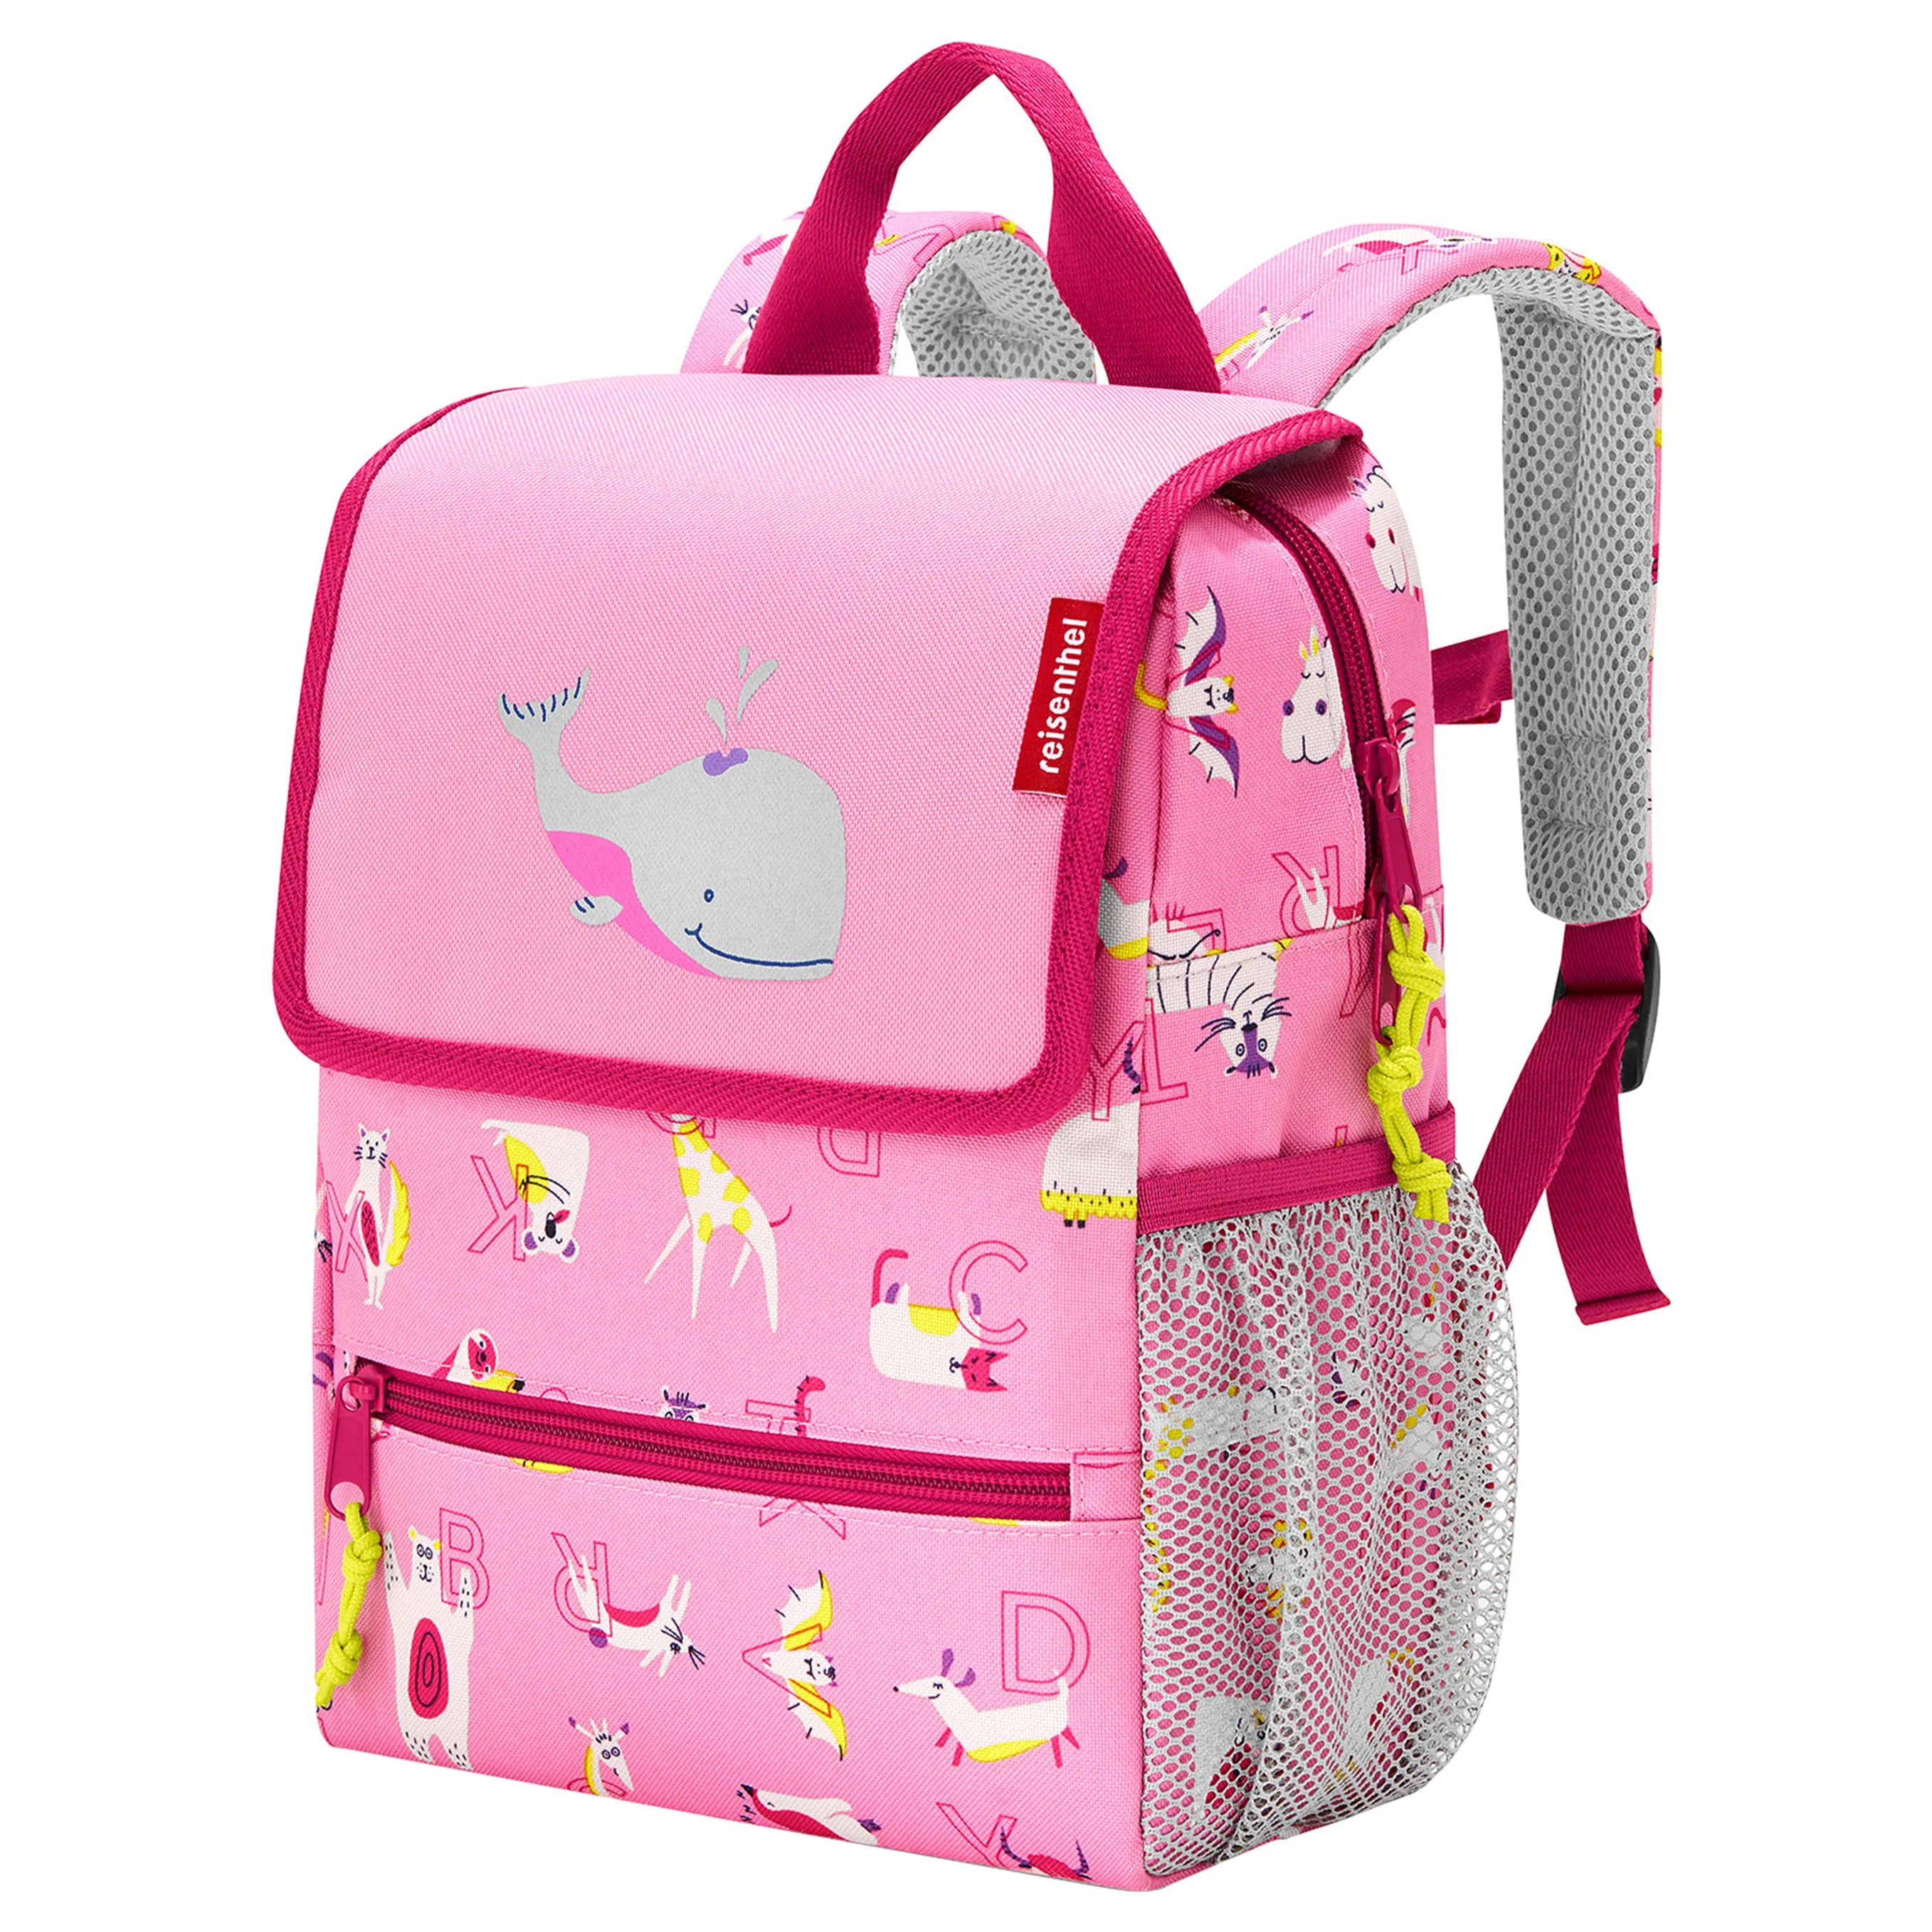 Reisenthel Kids Backpack Backpack 28 cm - friends pink